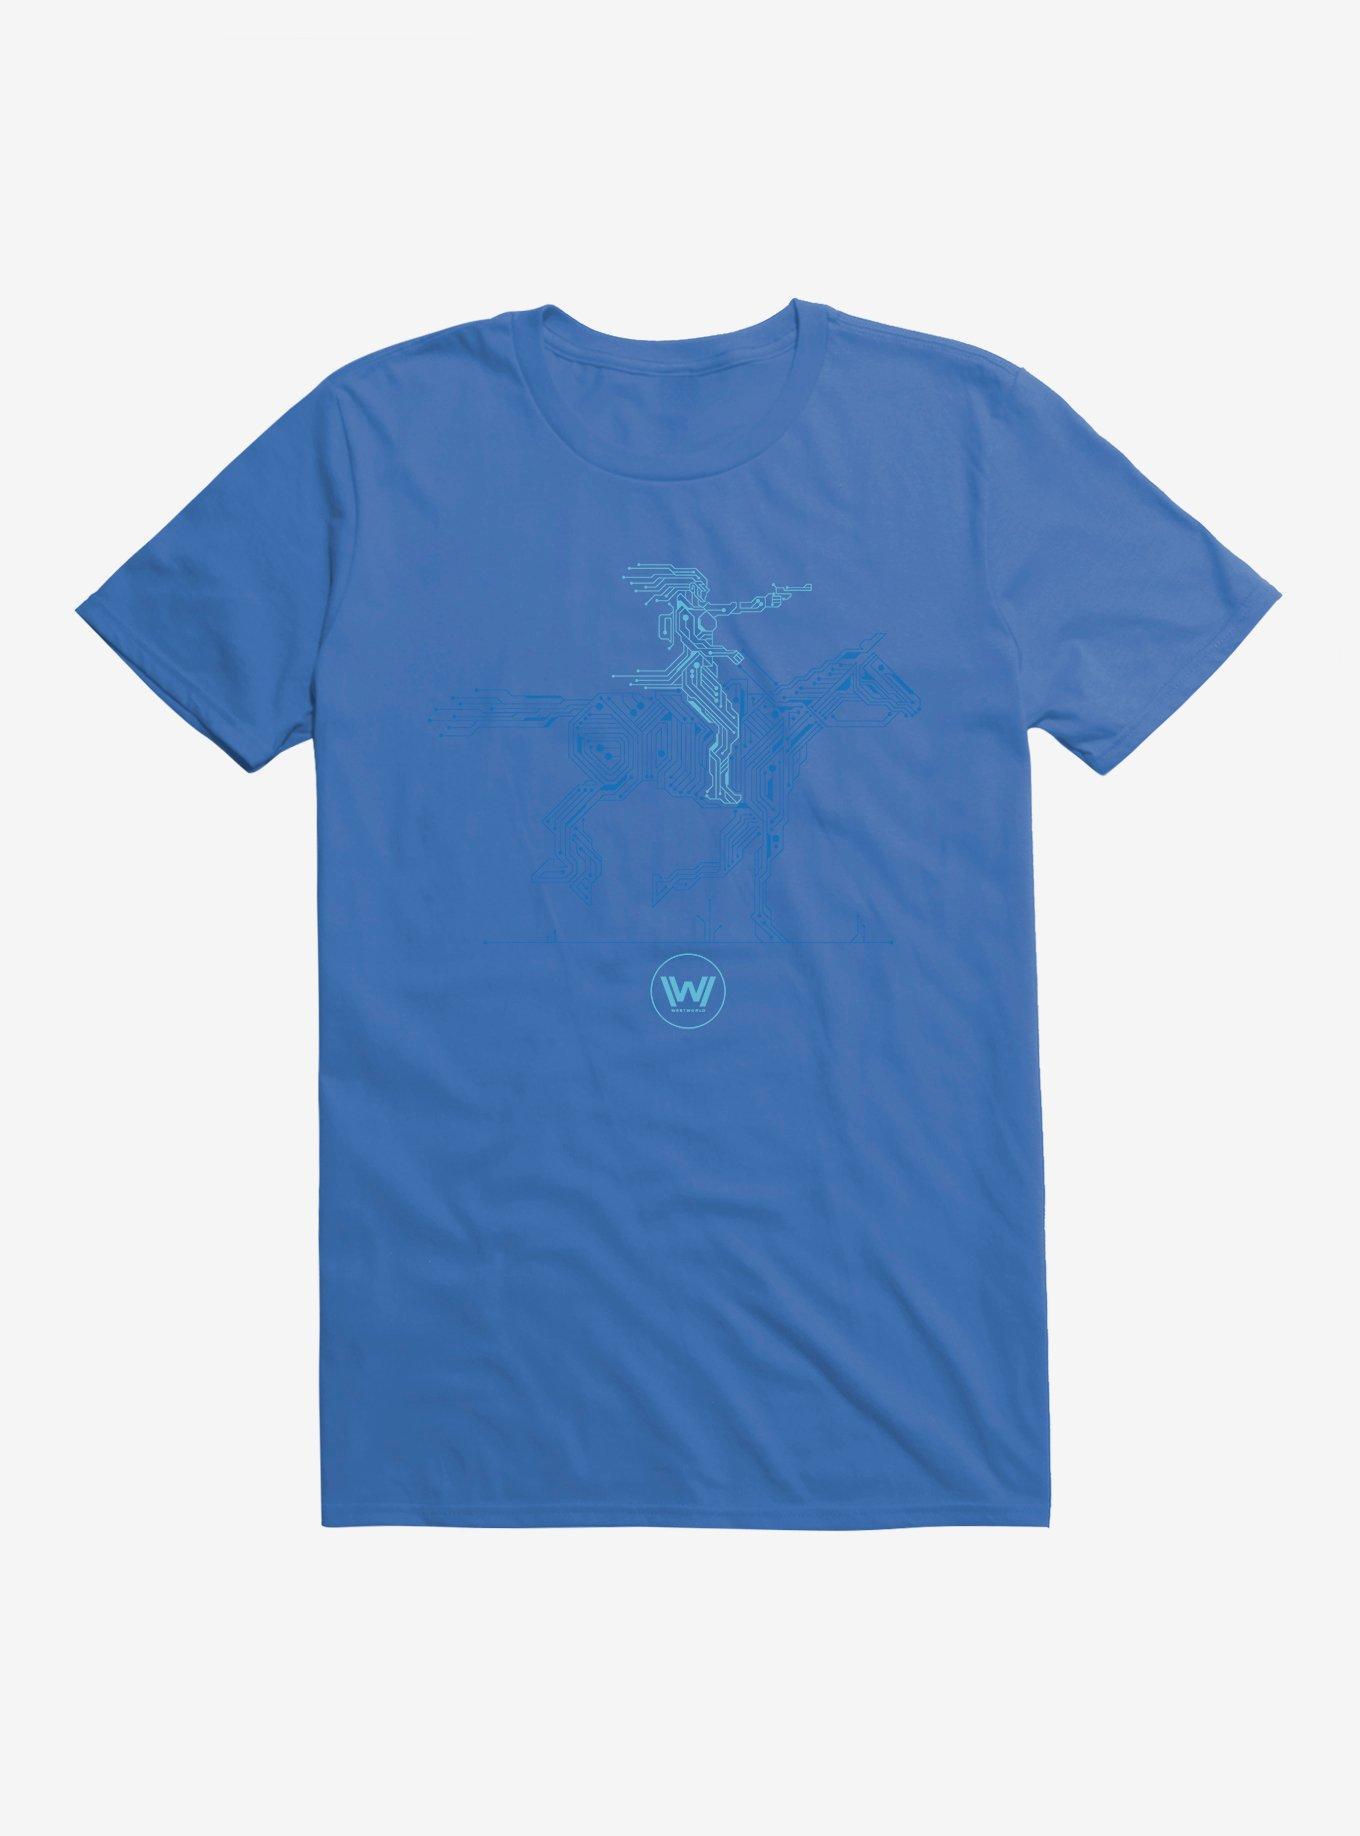 Westworld Android And Horse T-Shirt, ROYAL BLUE, hi-res